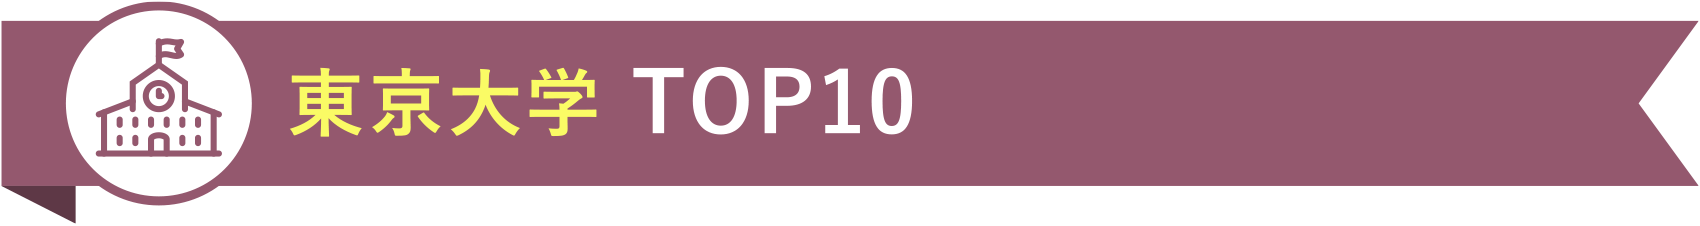 東京大学 TOP10